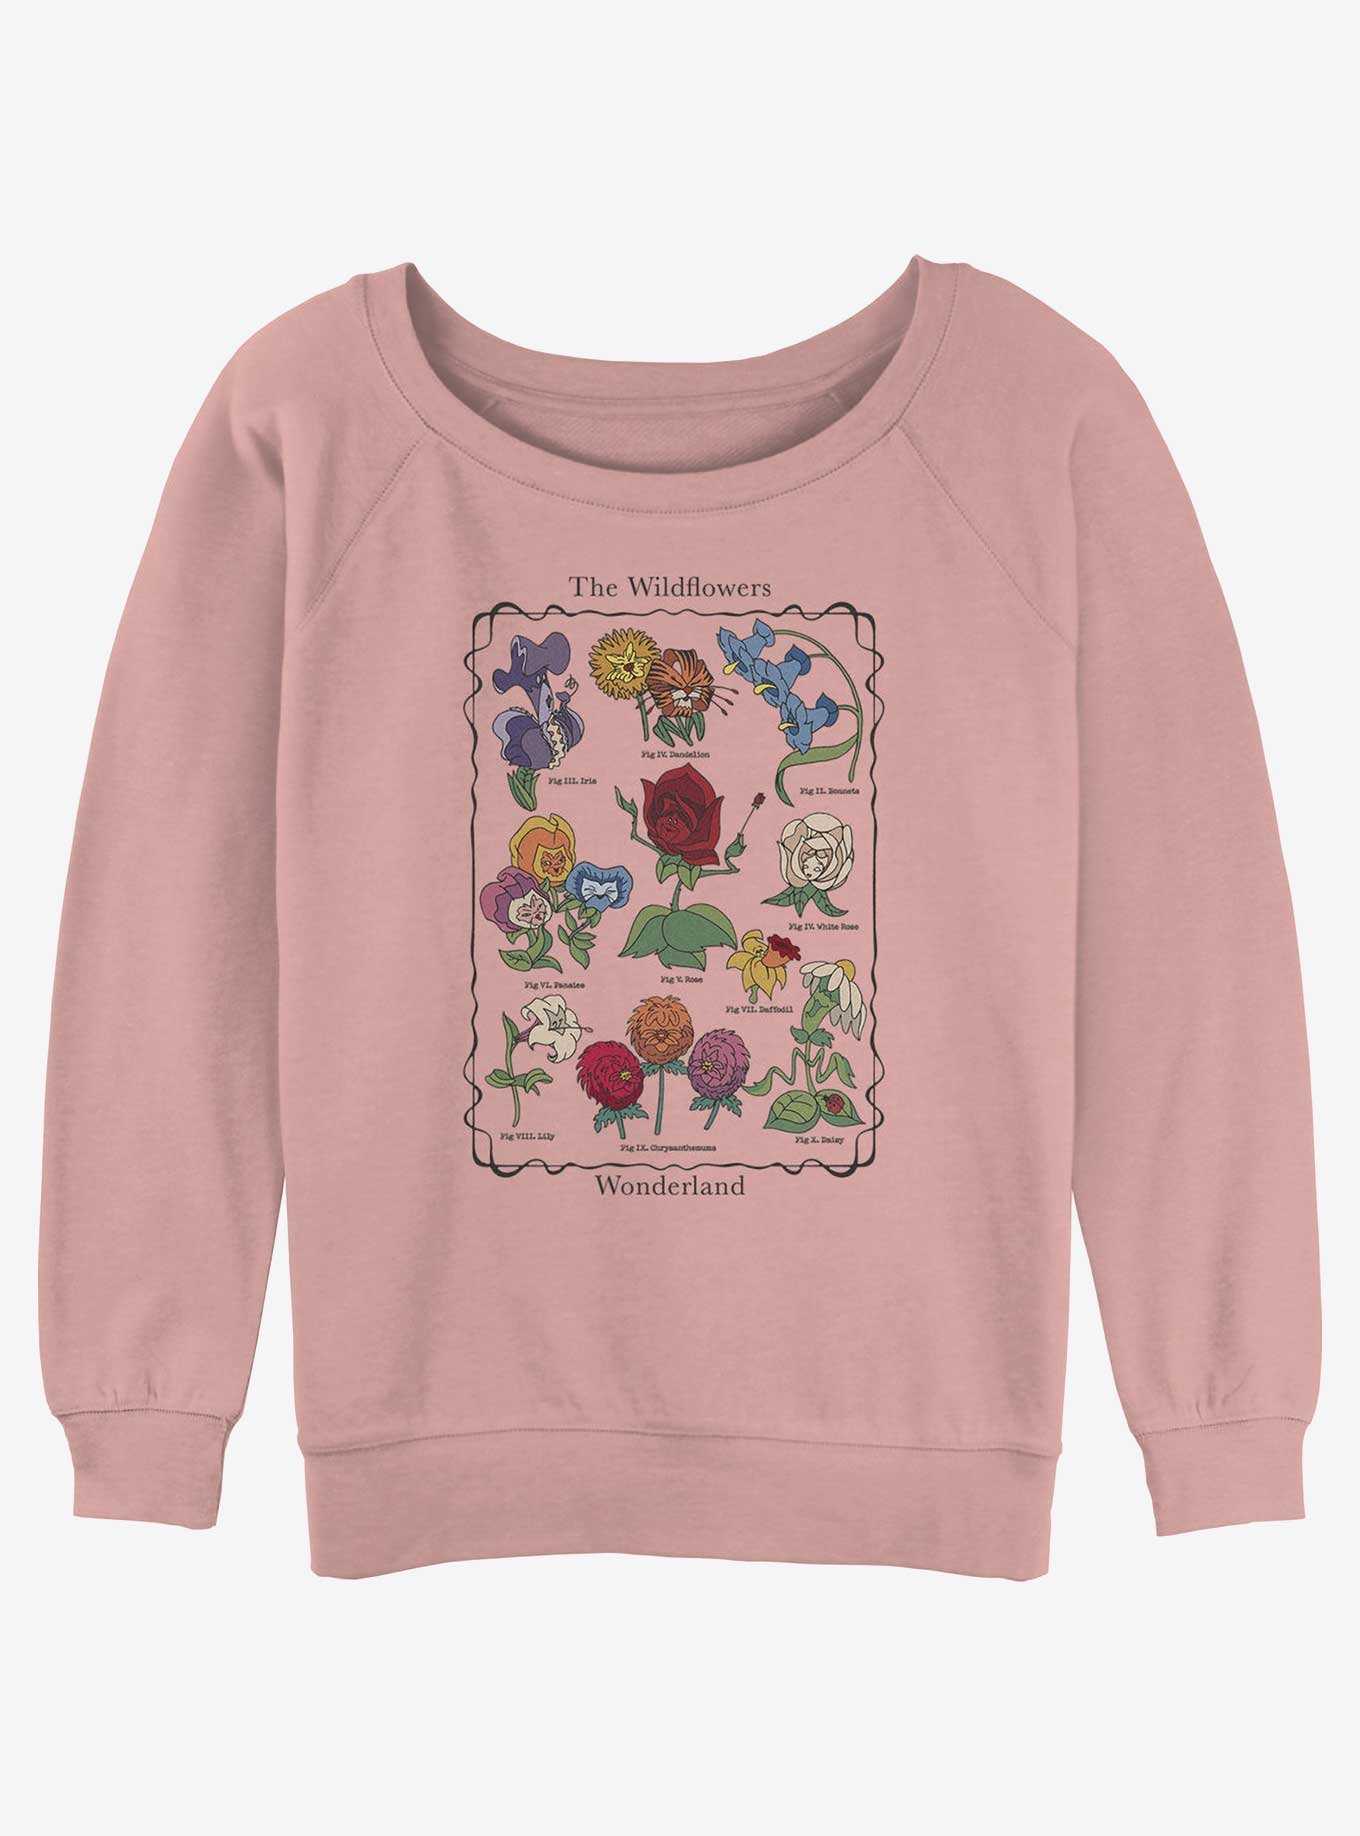 Disney Alice in Wonderland The Wildflowers Girls Slouchy Sweatshirt, , hi-res